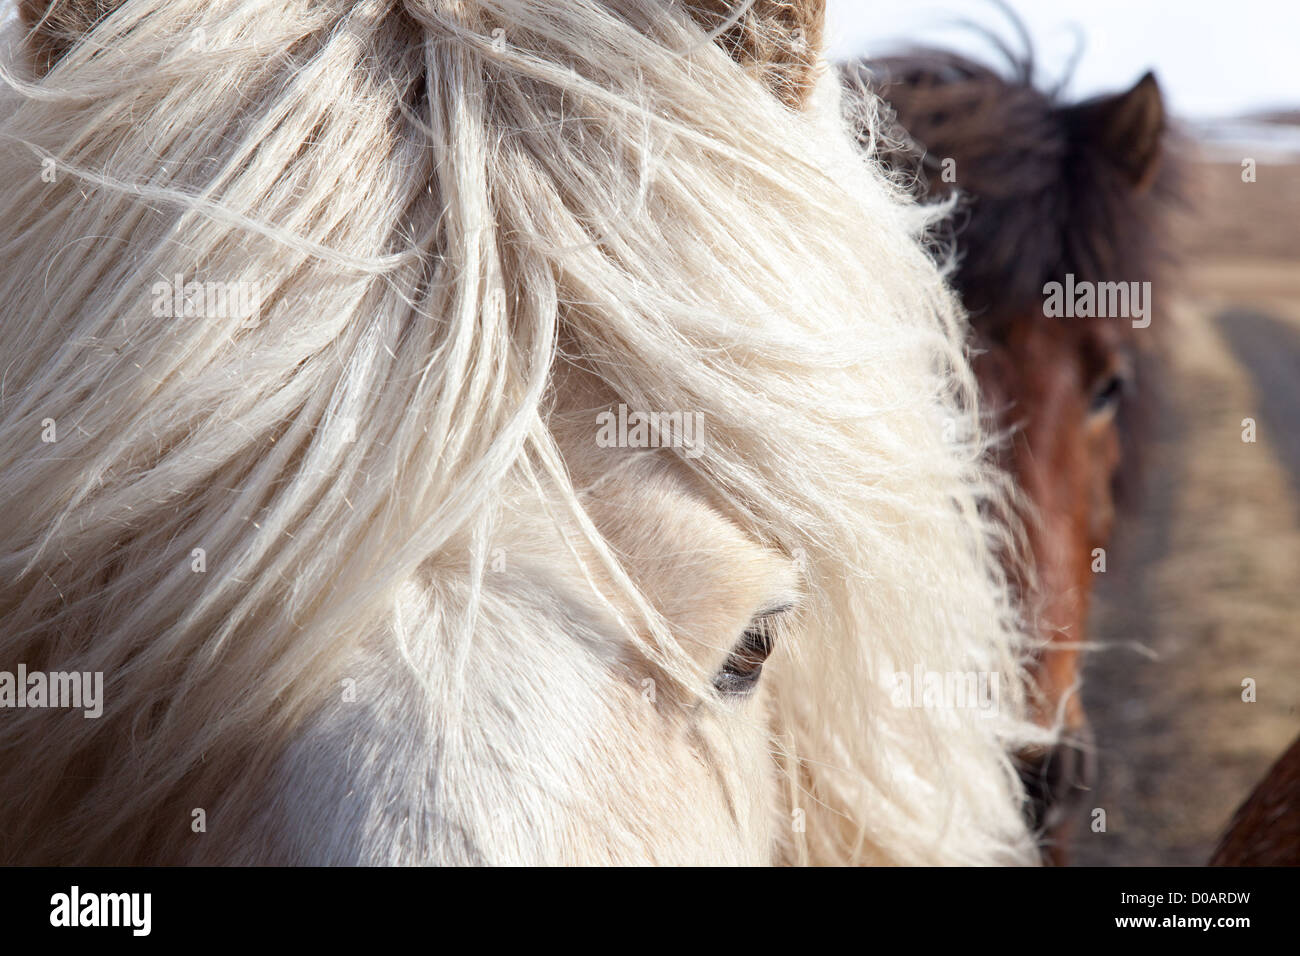 HERDS OF ICELANDIC HORSES NORTHWESTERN ICELAND EUROPE Stock Photo